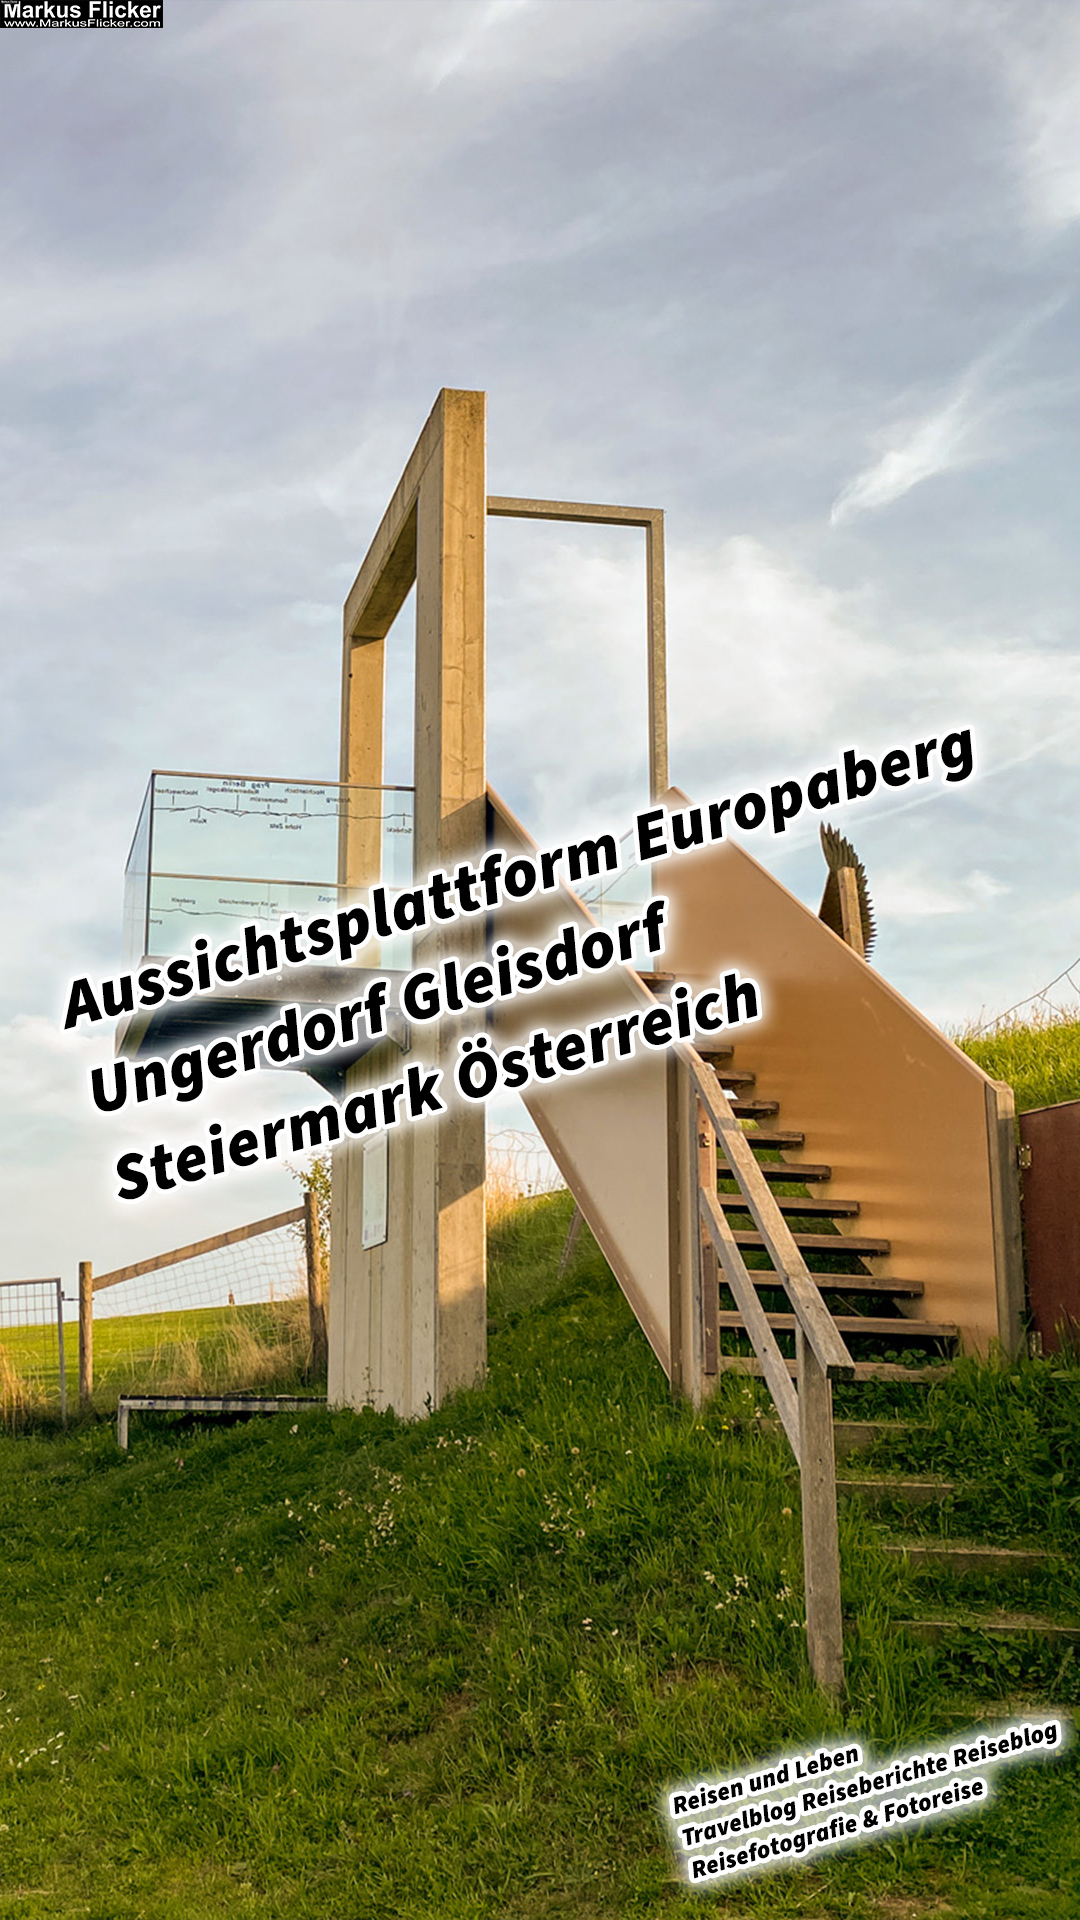 Aussichtsplattform Europaberg Ungerdorf Gleisdorf Steiermark Österreich #visitstyria #visitaustria #gleisdorfcity